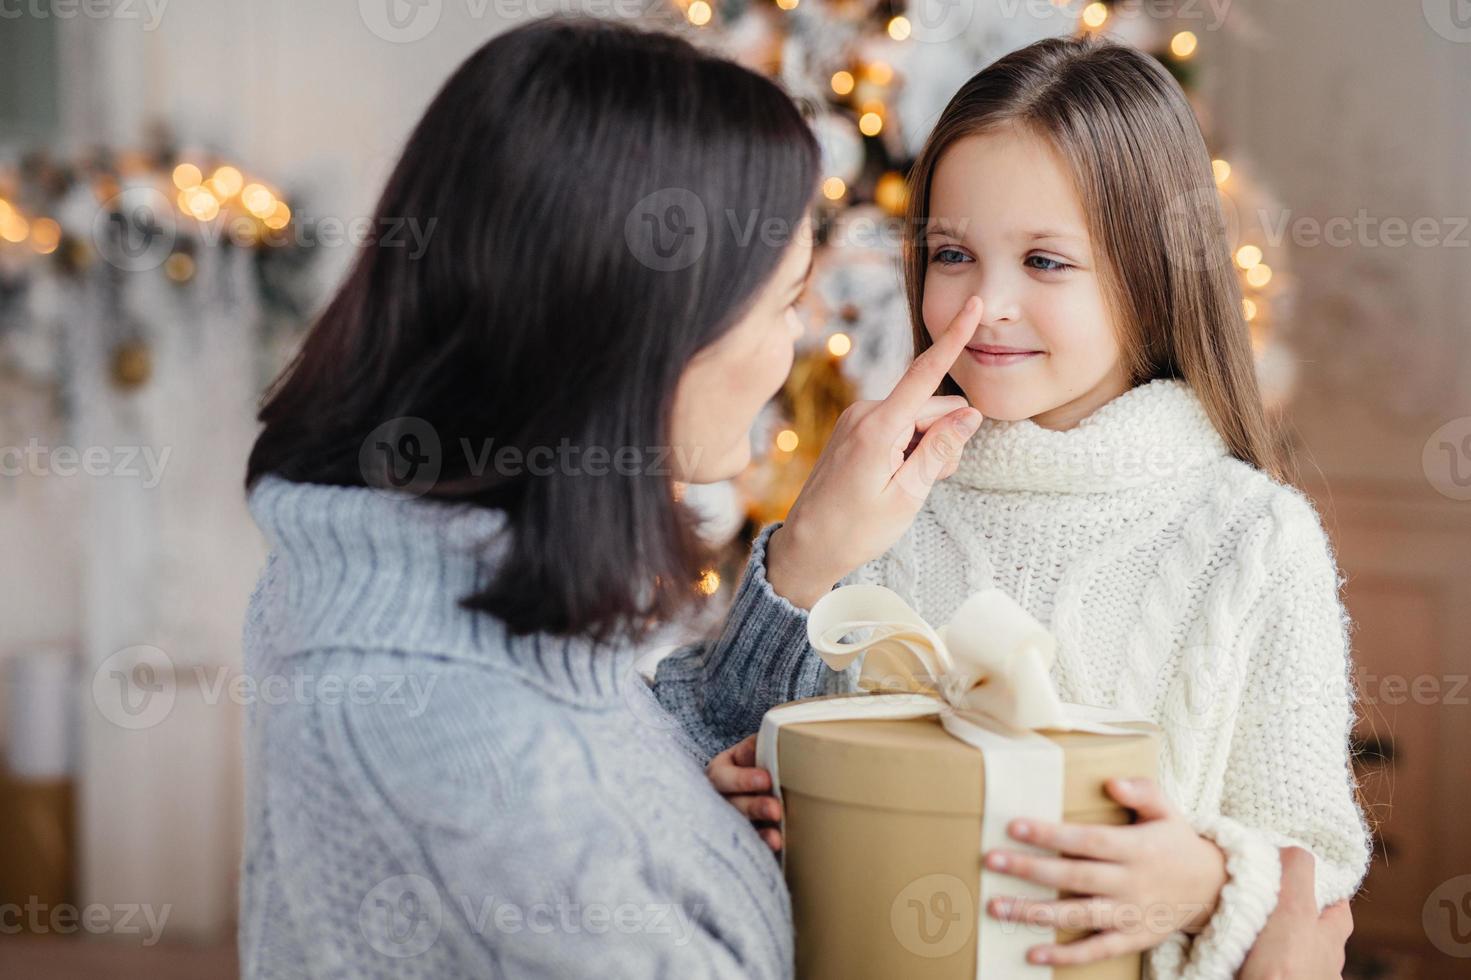 liebevolle mutter schenkt ihrer entzückenden kleinen tochter ein geschenk, bereitet zu weihnachten eine überraschung vor, berührt ihre nase, drückt große liebe aus. familie, feier, geschenke, wunder, winterferienkonzept foto